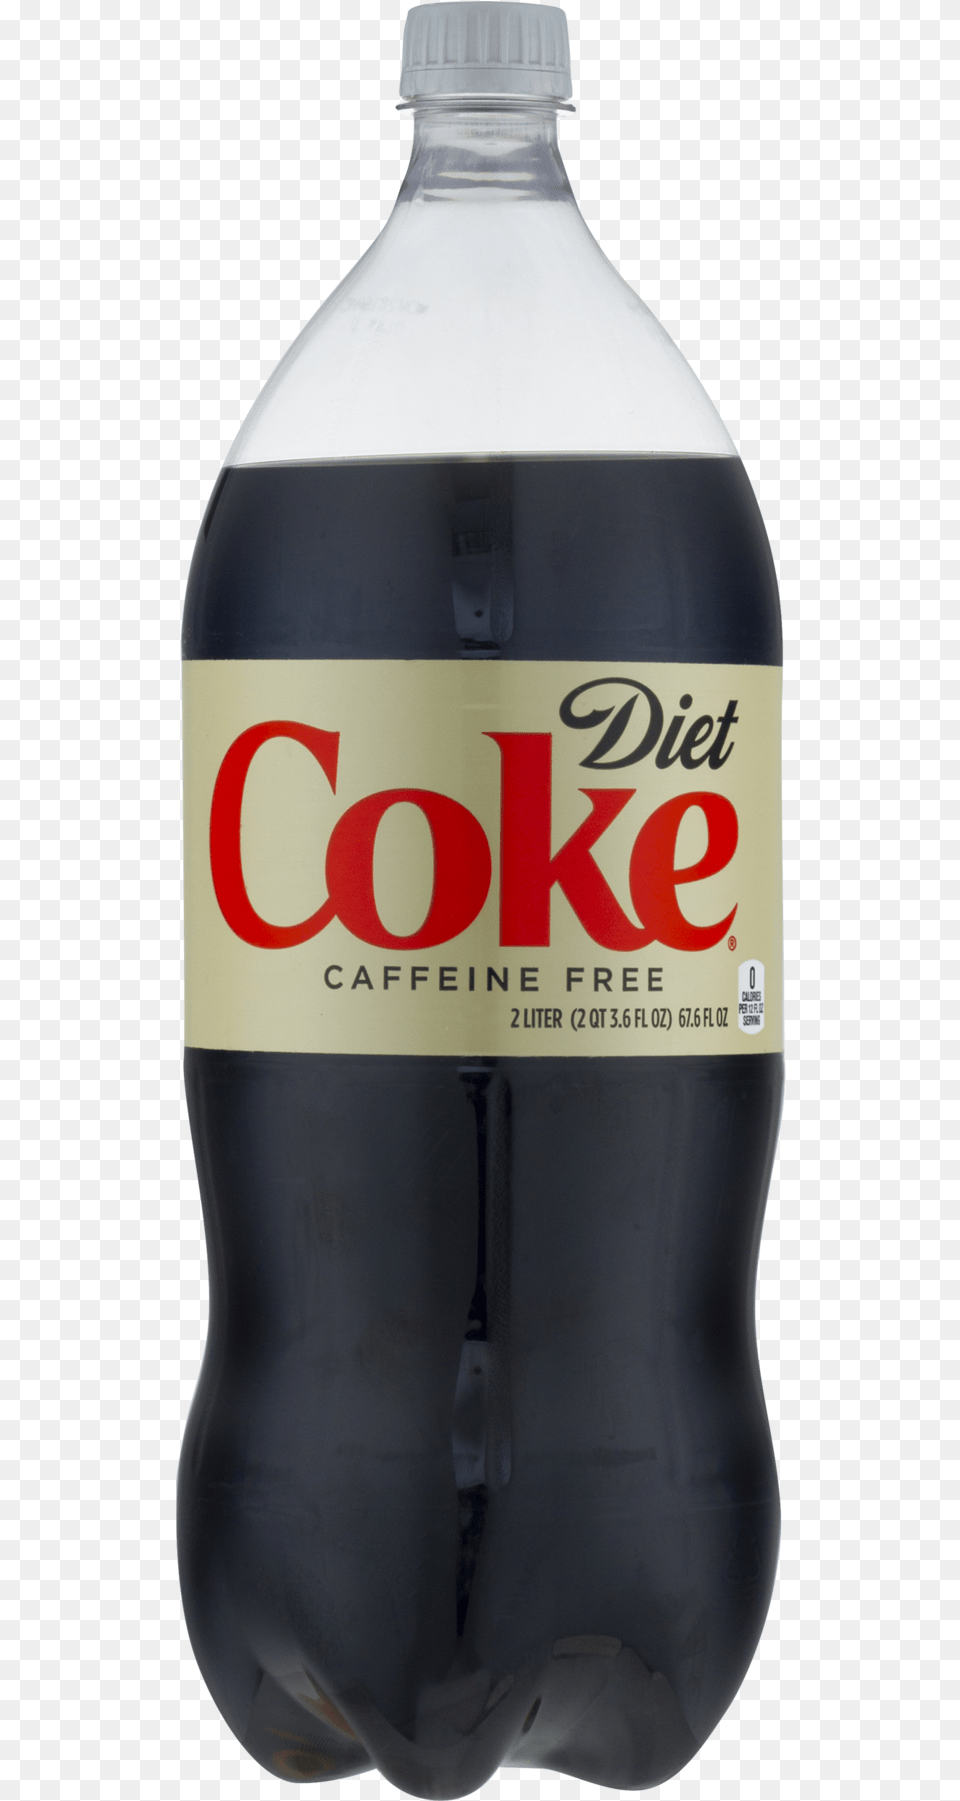 Diet Coke Bottle Transparent, Beverage, Soda, Alcohol, Beer Png Image